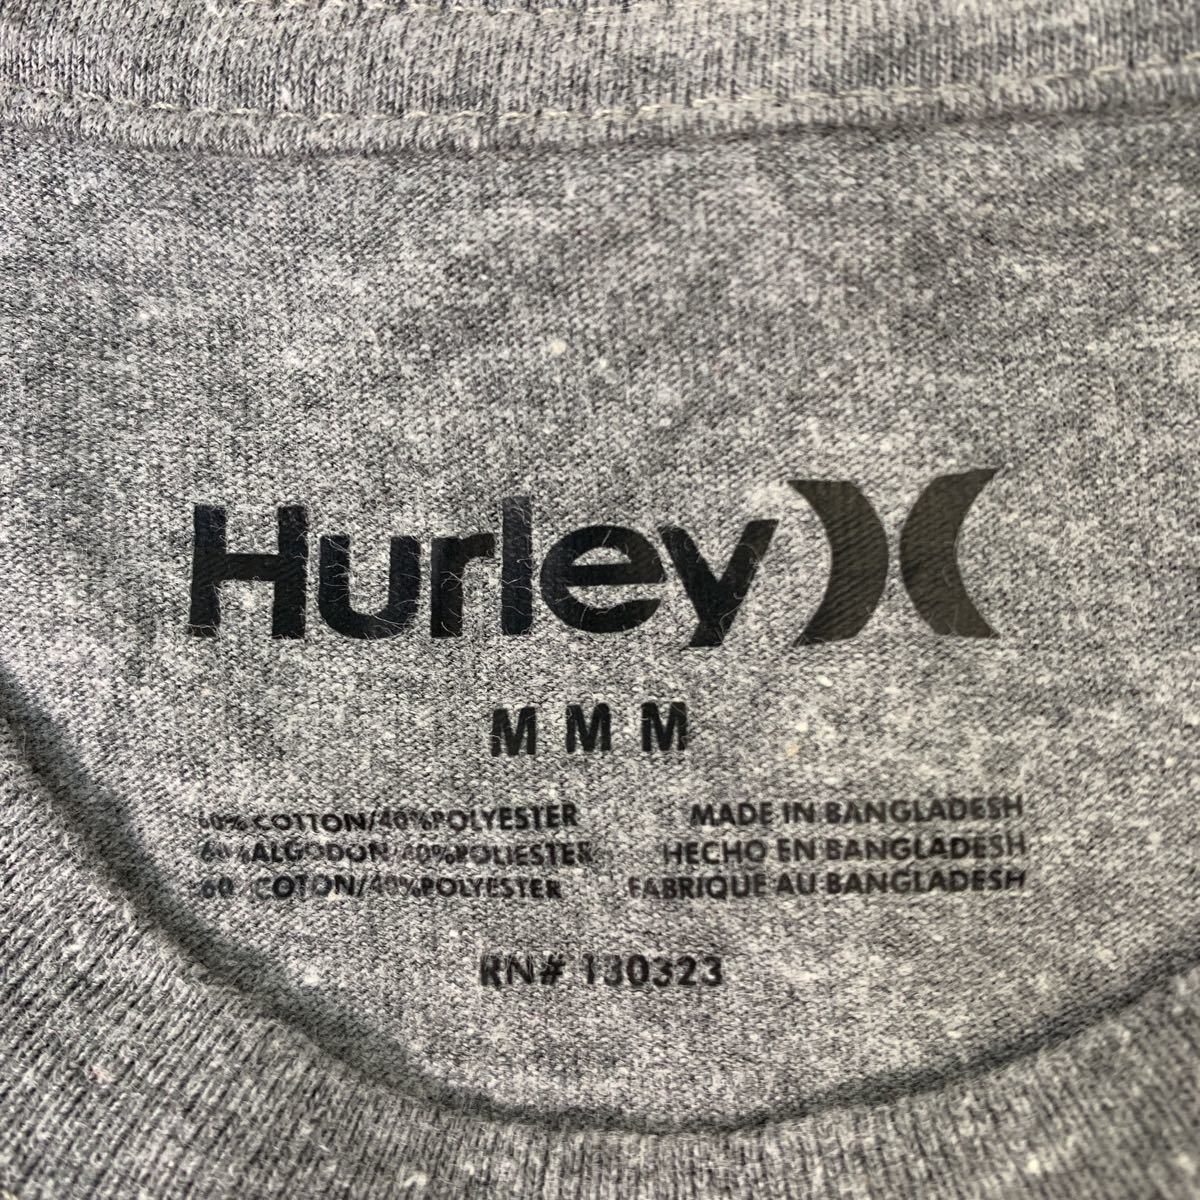 【アメリカ❗️】90s Hurley プリントロゴ　グレー　L ビッグサイズ